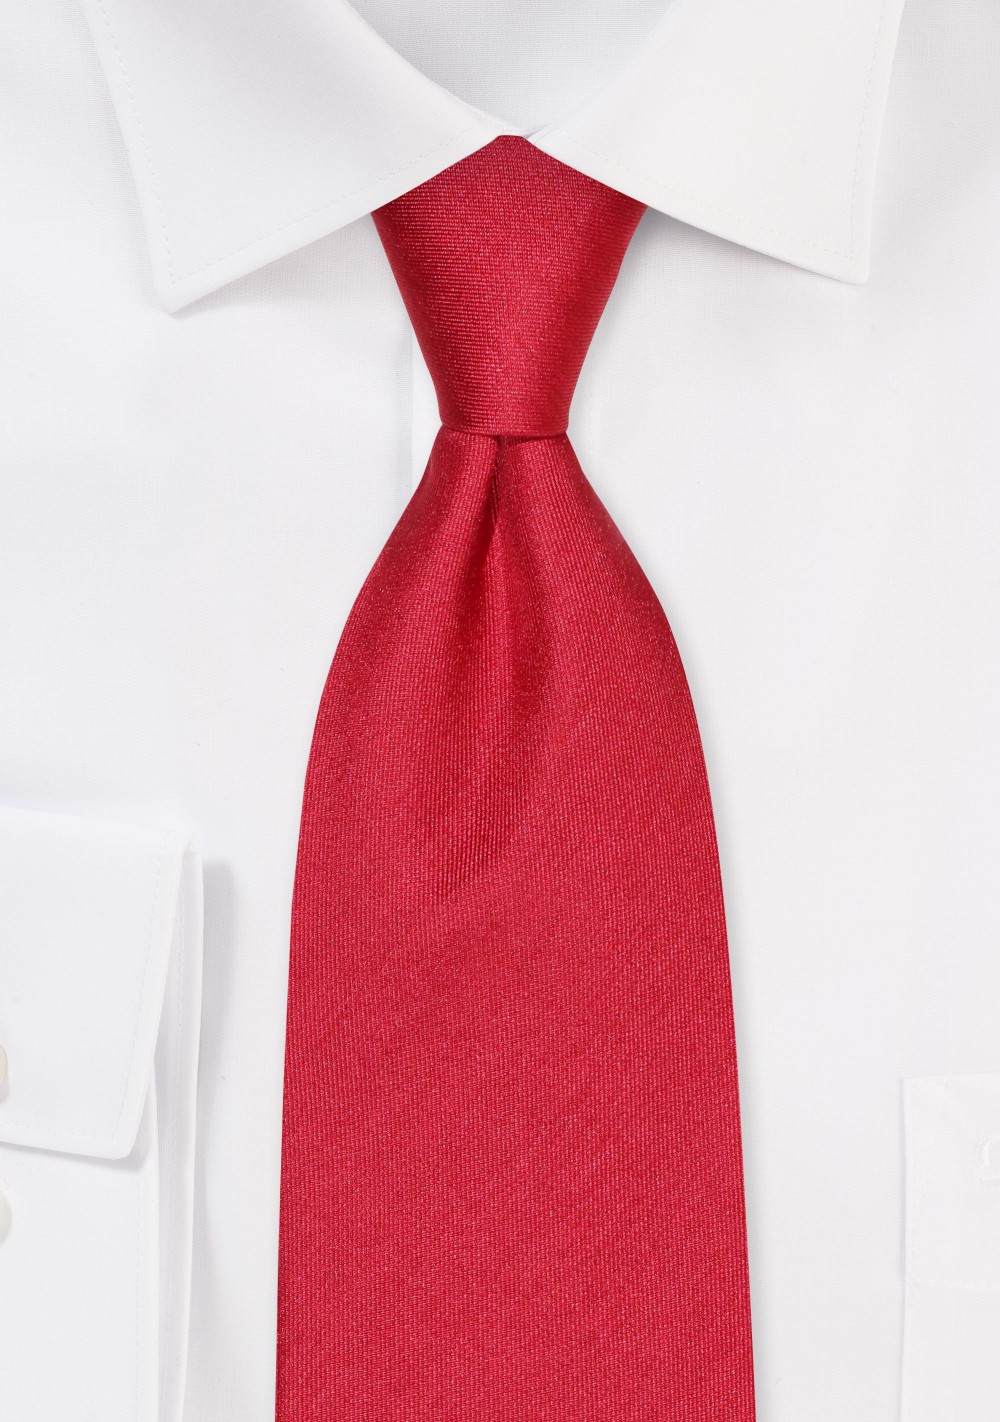 Matte Cherry Red XL Silk Tie